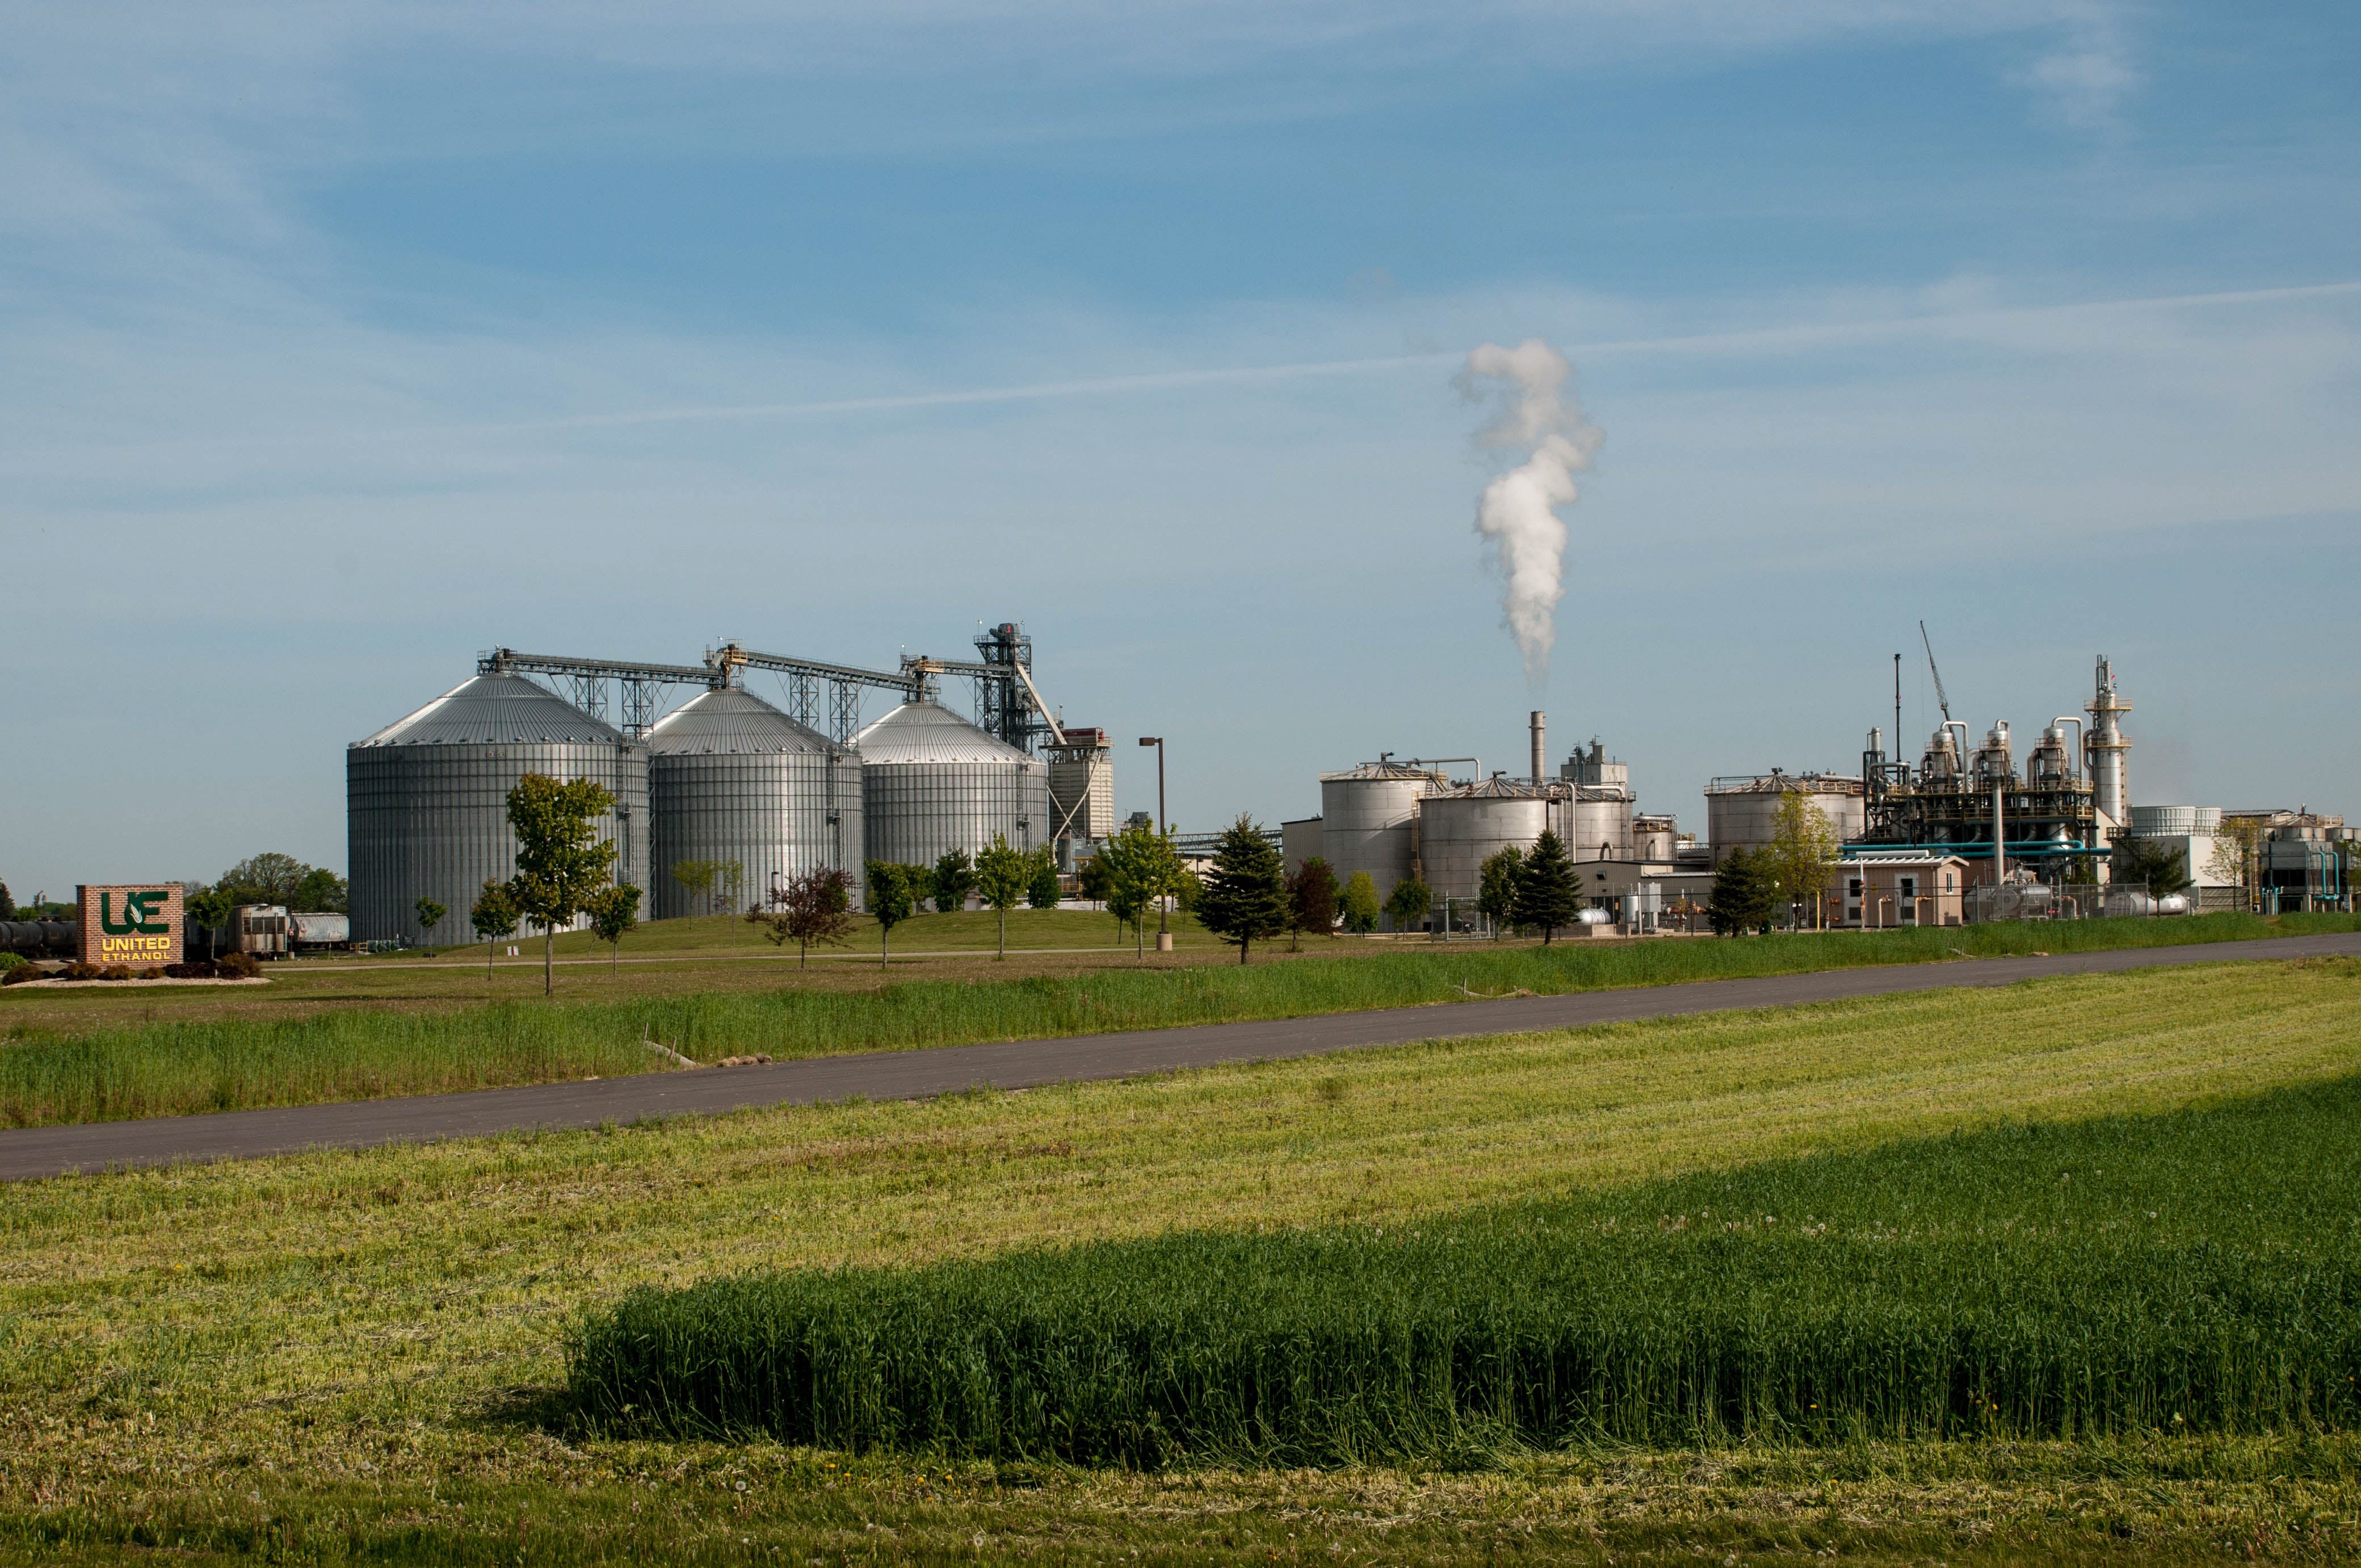 ethanol production plant